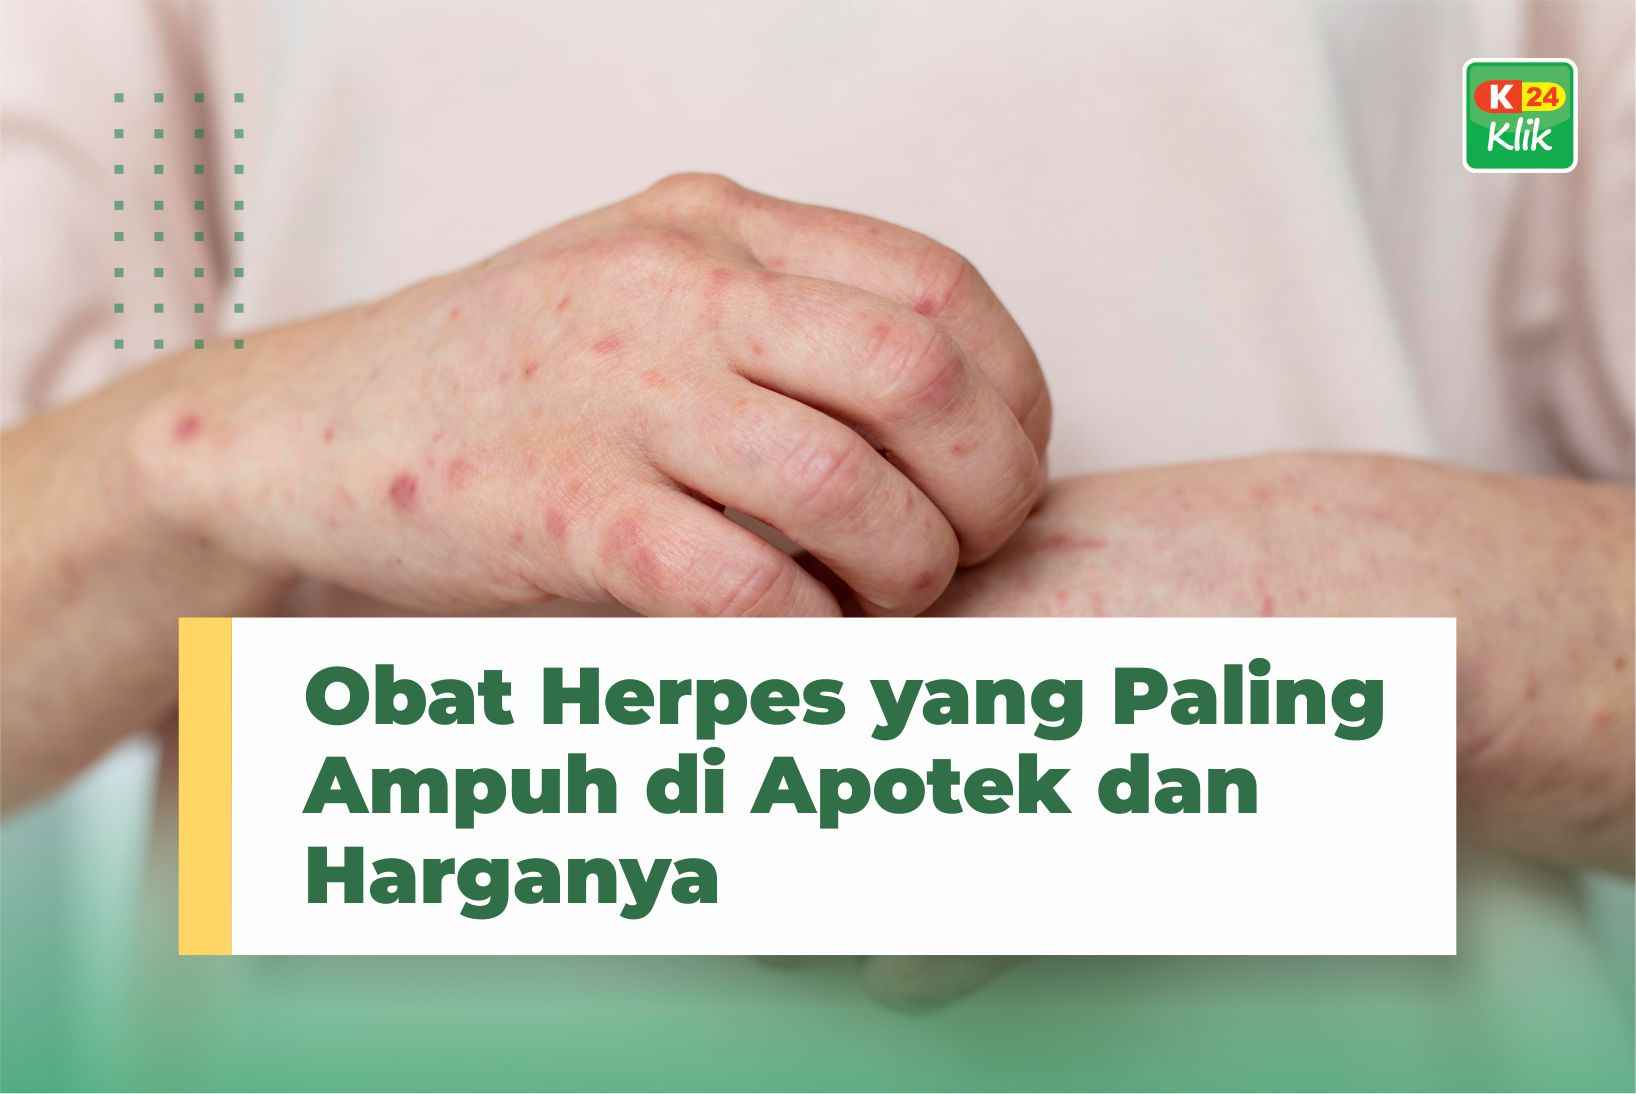 Obat Herpes yang Paling Ampuh di Apotek dan Harganya